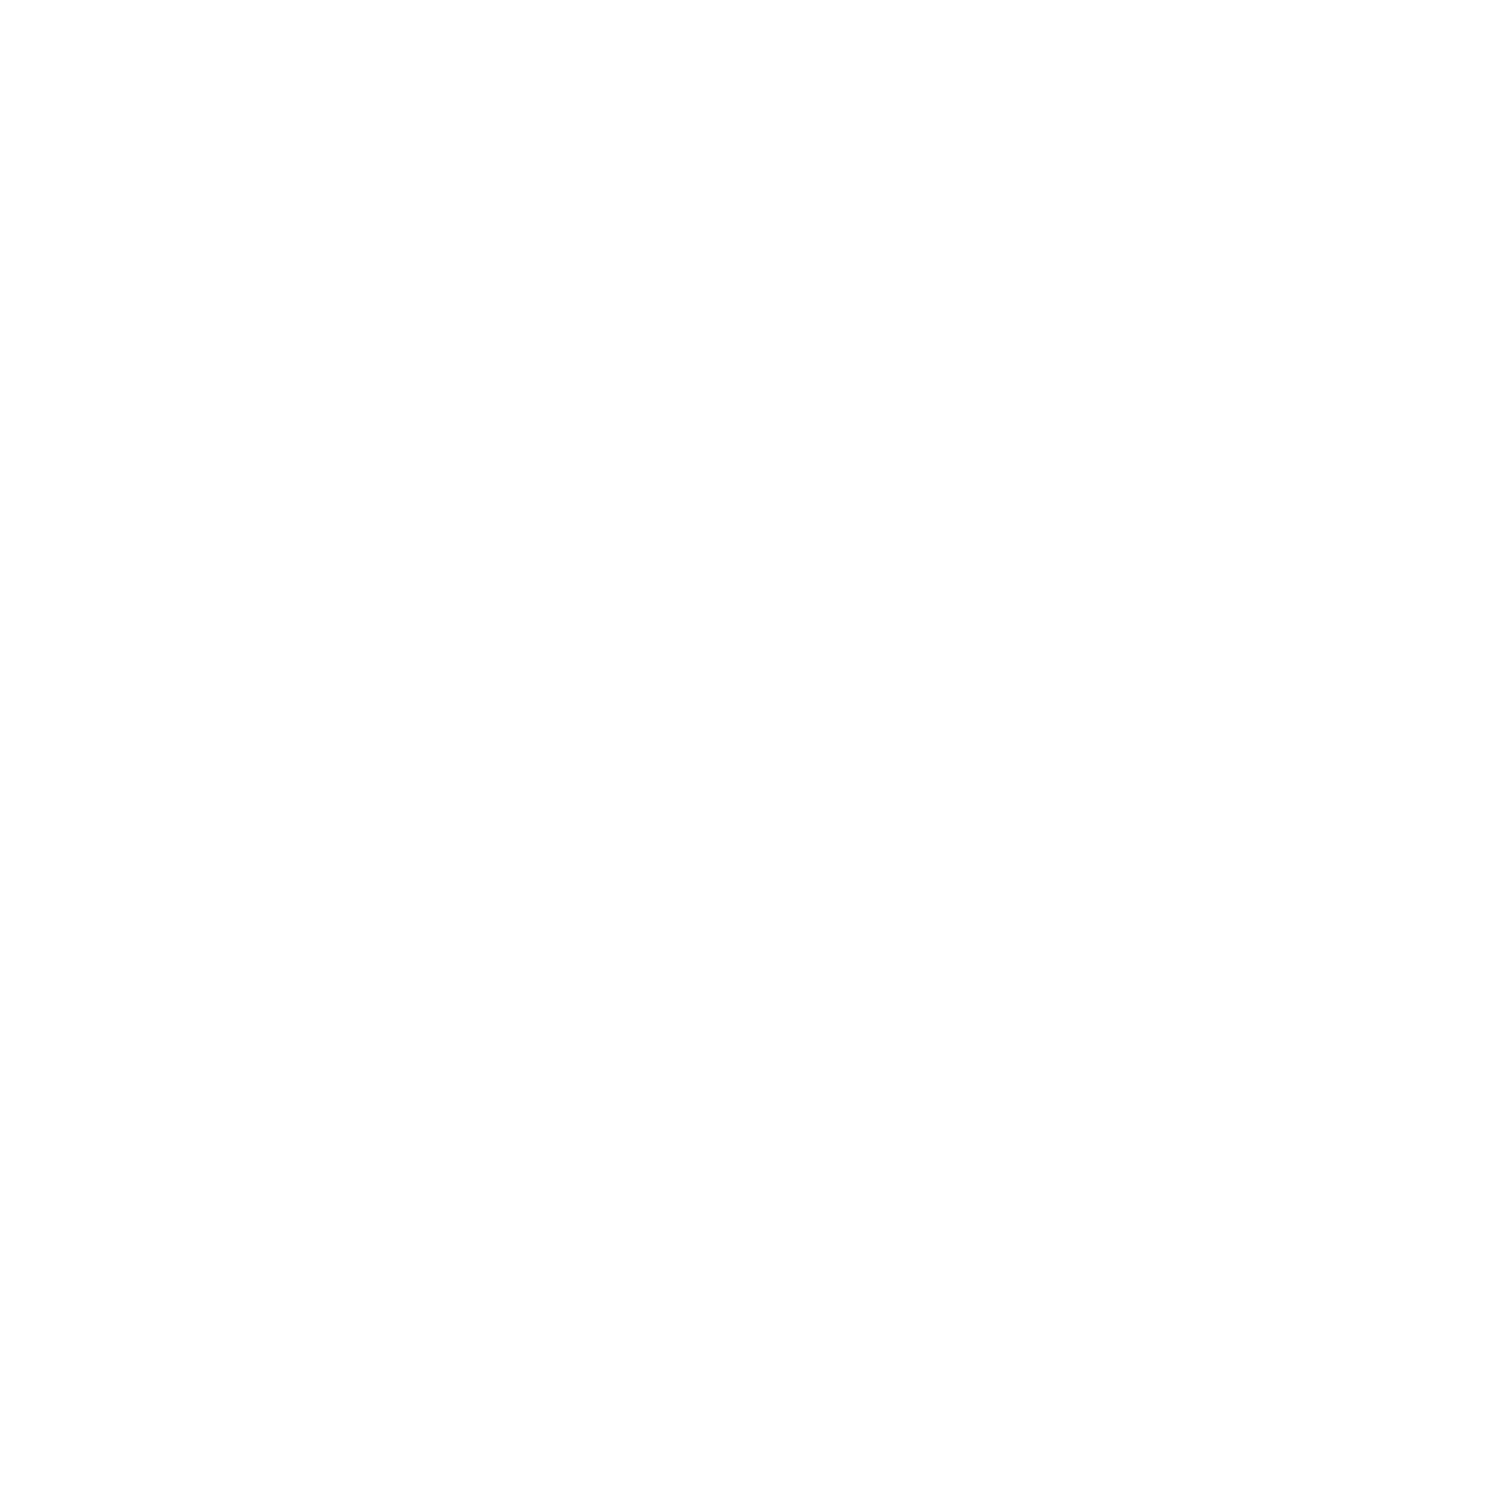 Charity May